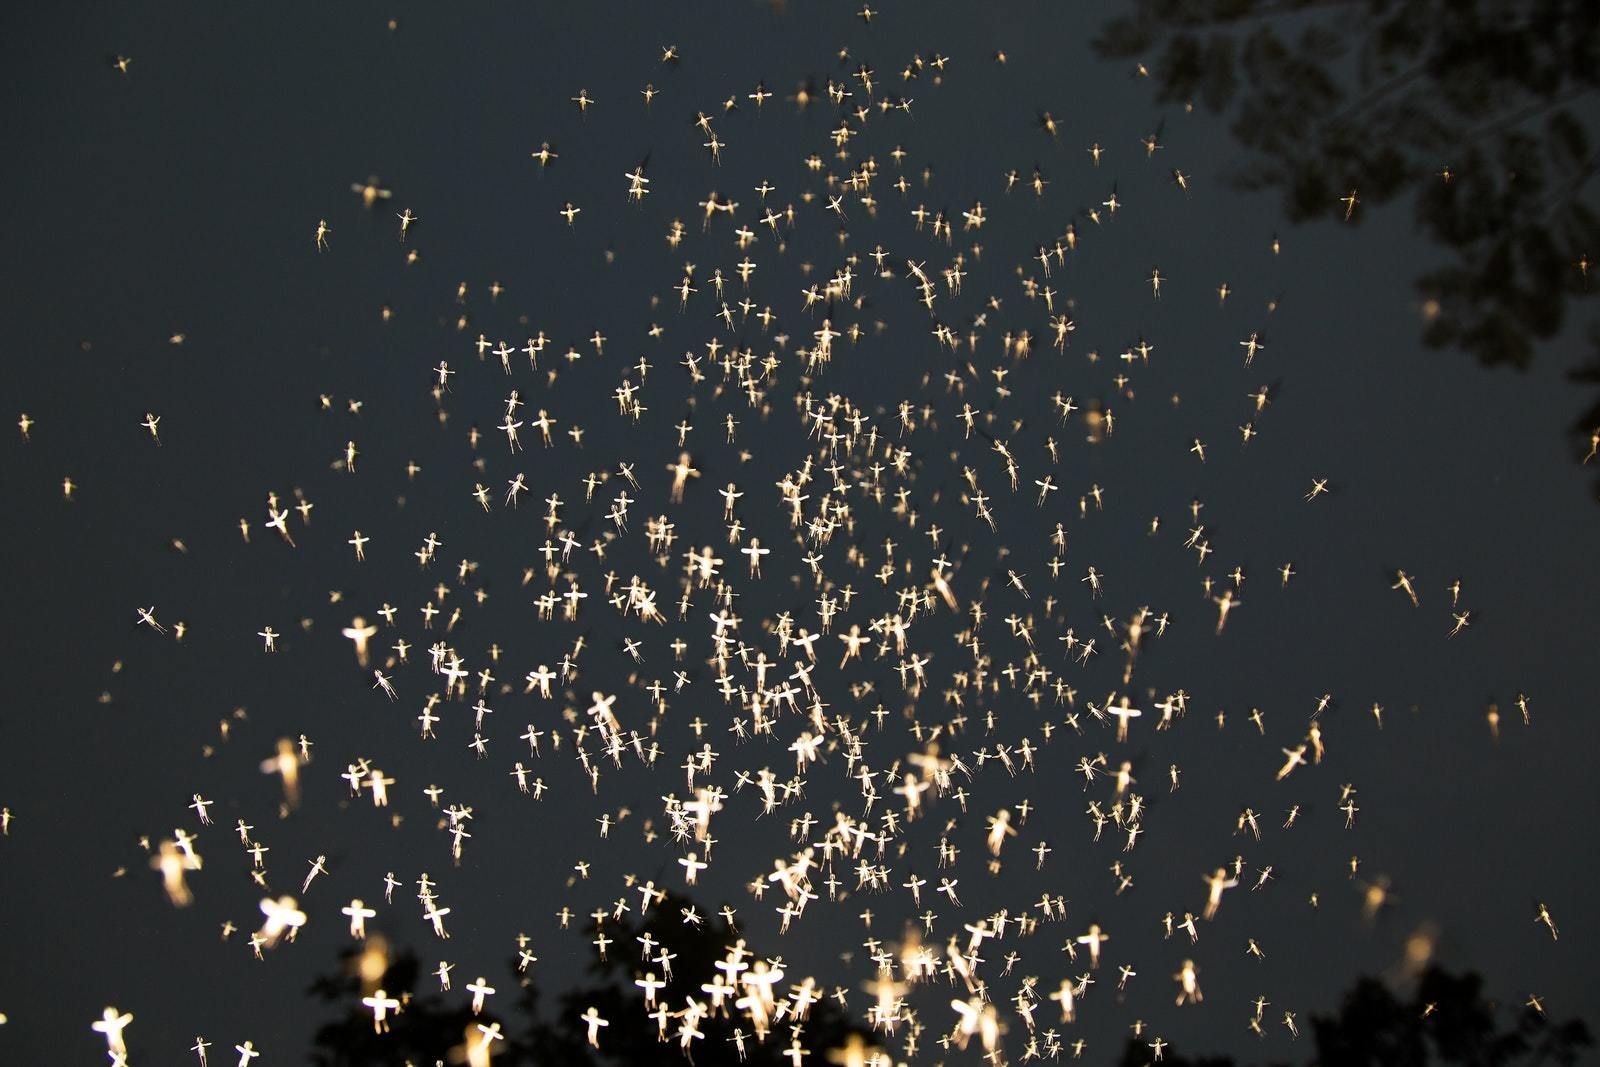 © Anupam Diwan, from the series Fireflies